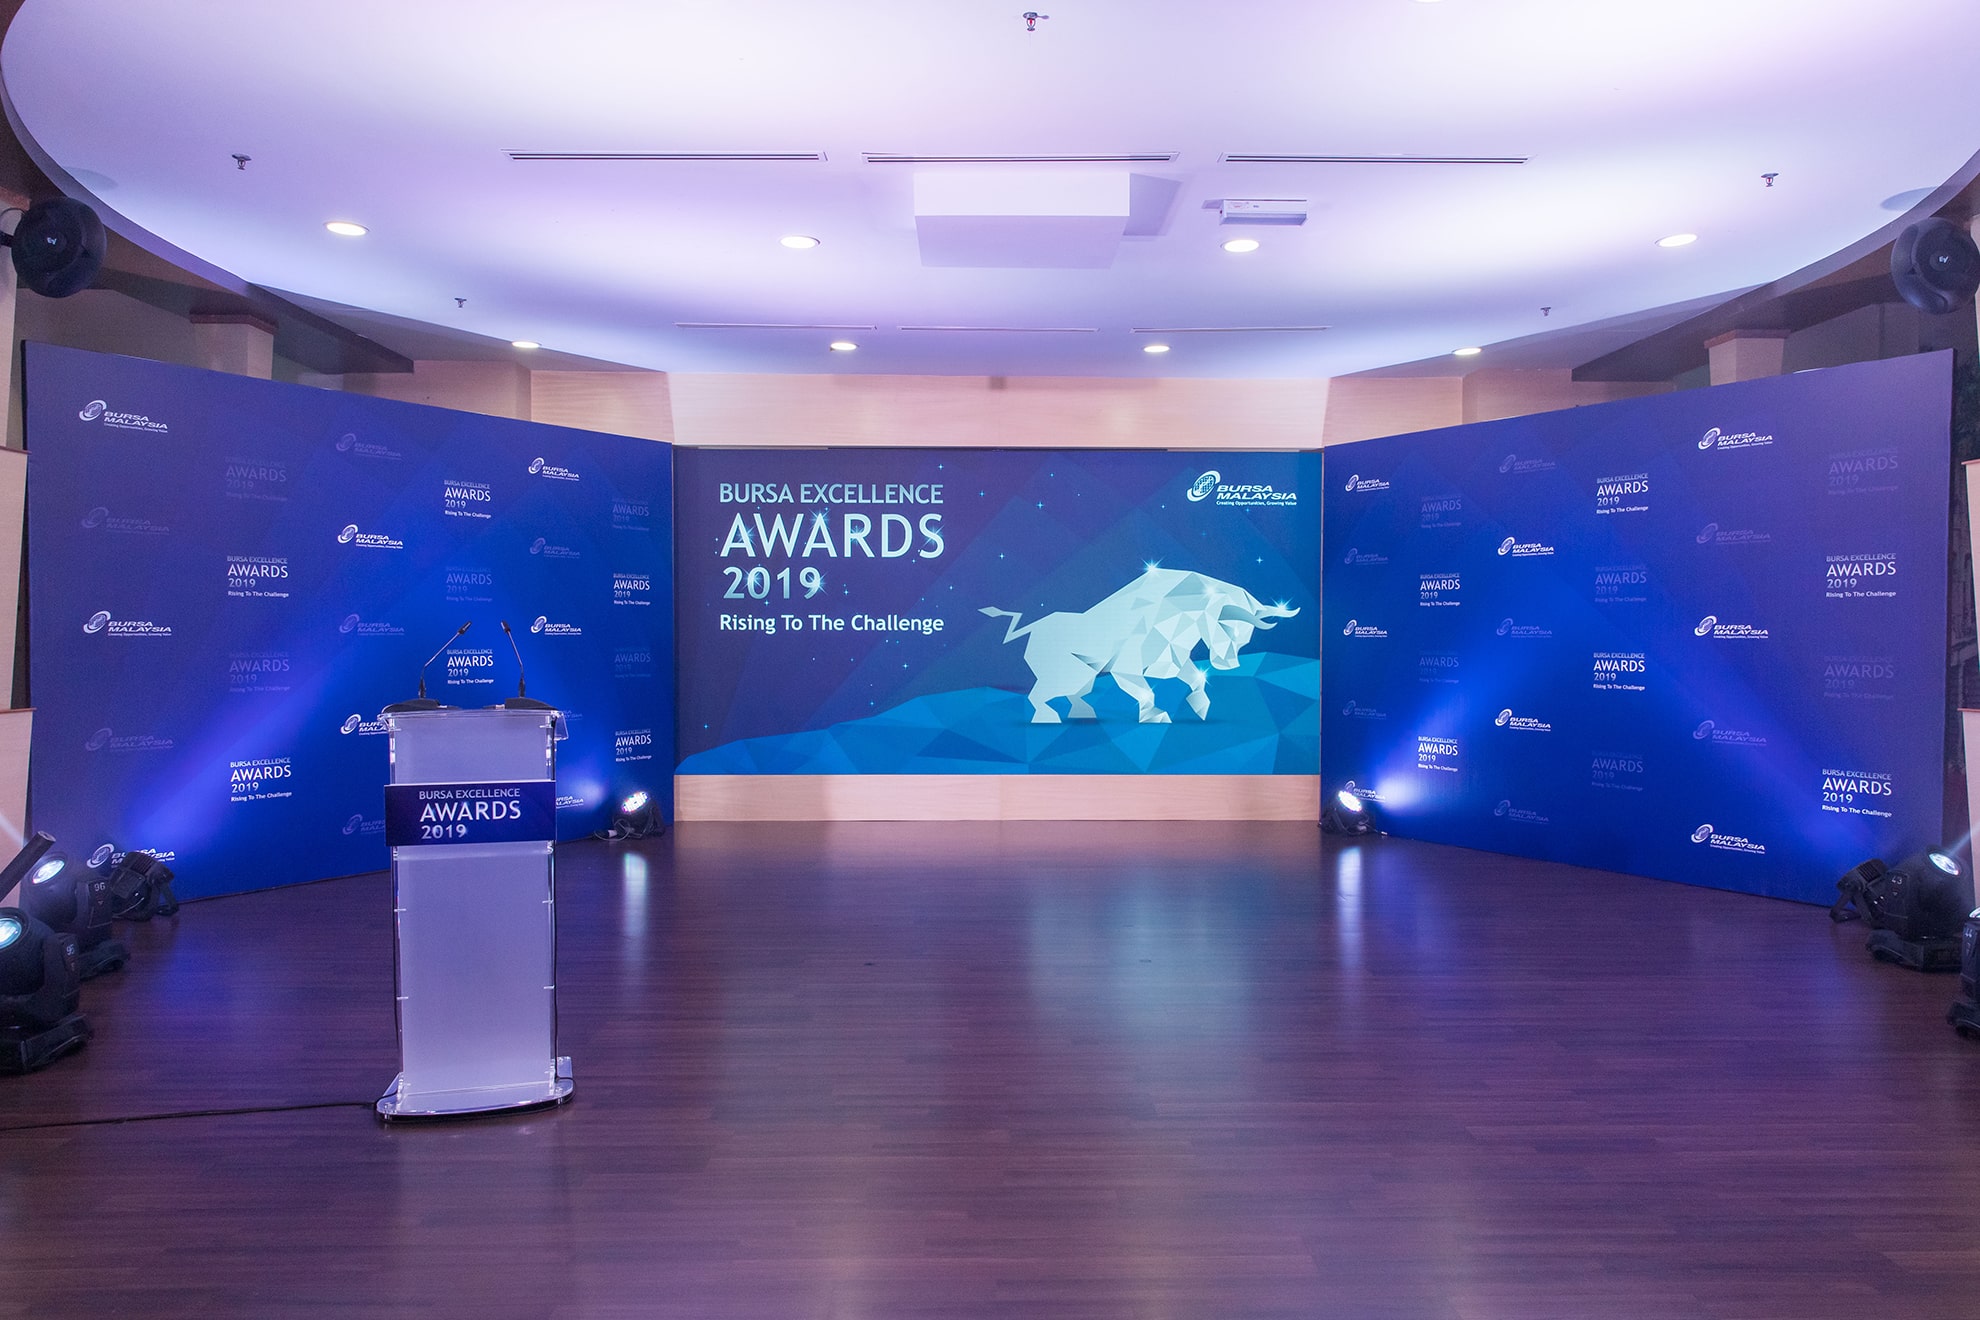 Bursa Excellence Awards 2019